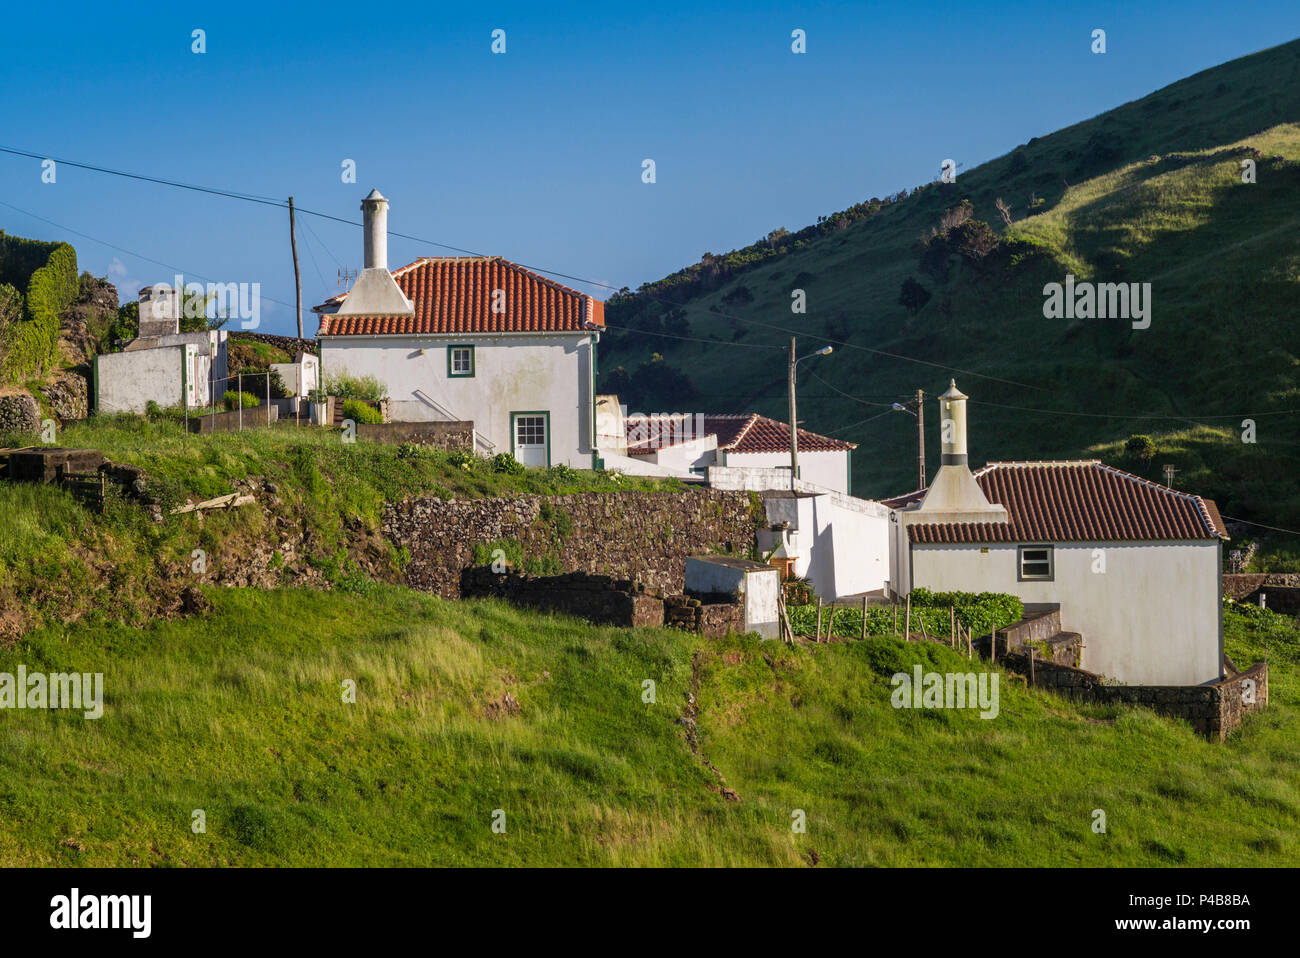 Portugal, Azores, Santa Maria Island, Malbusca, elevated village view Stock Photo